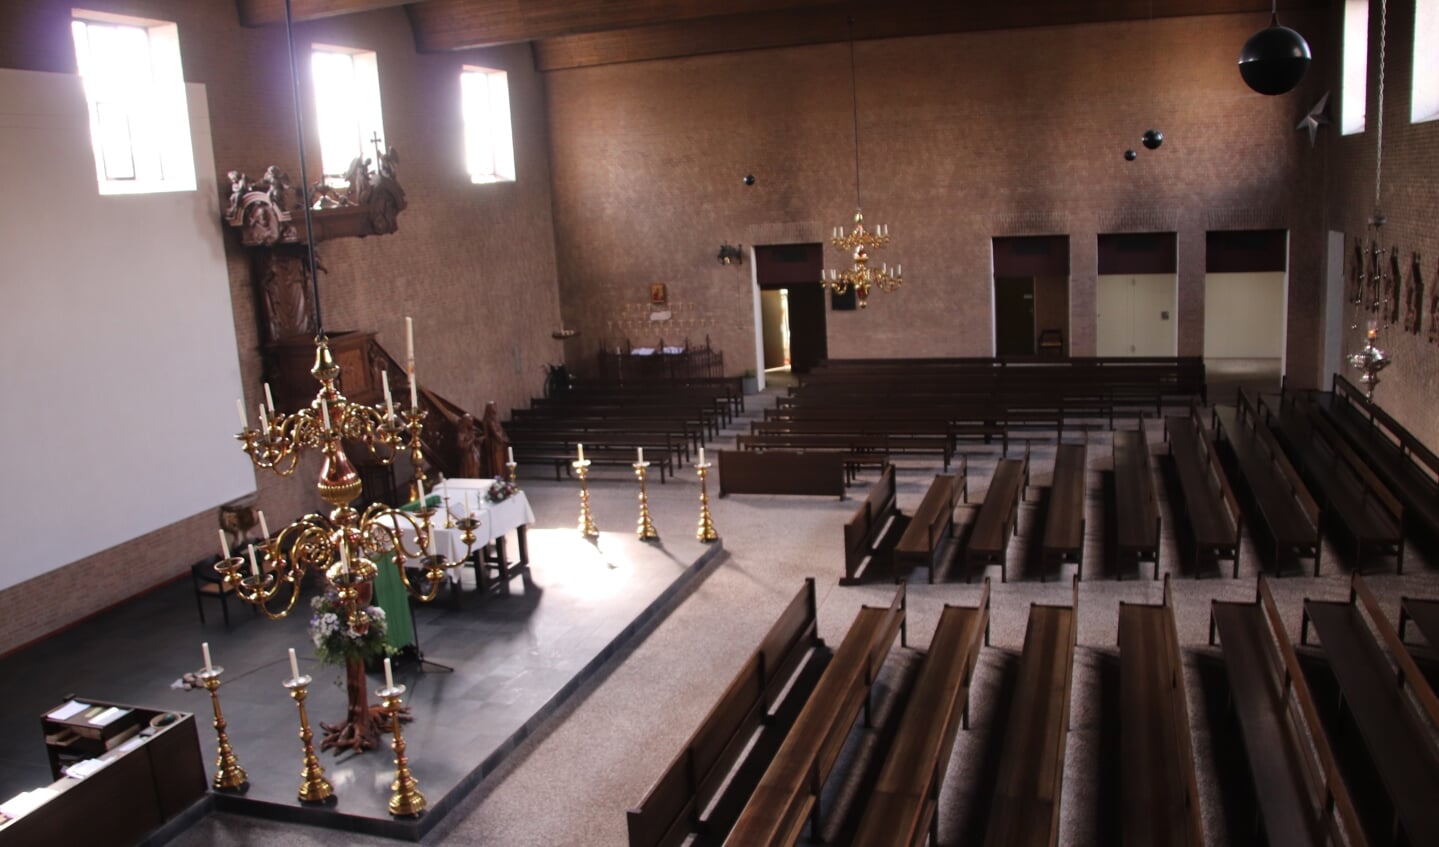 Blik in de Petrus en Pauluskerk die op 14 en 15 september te bezichtigen is.